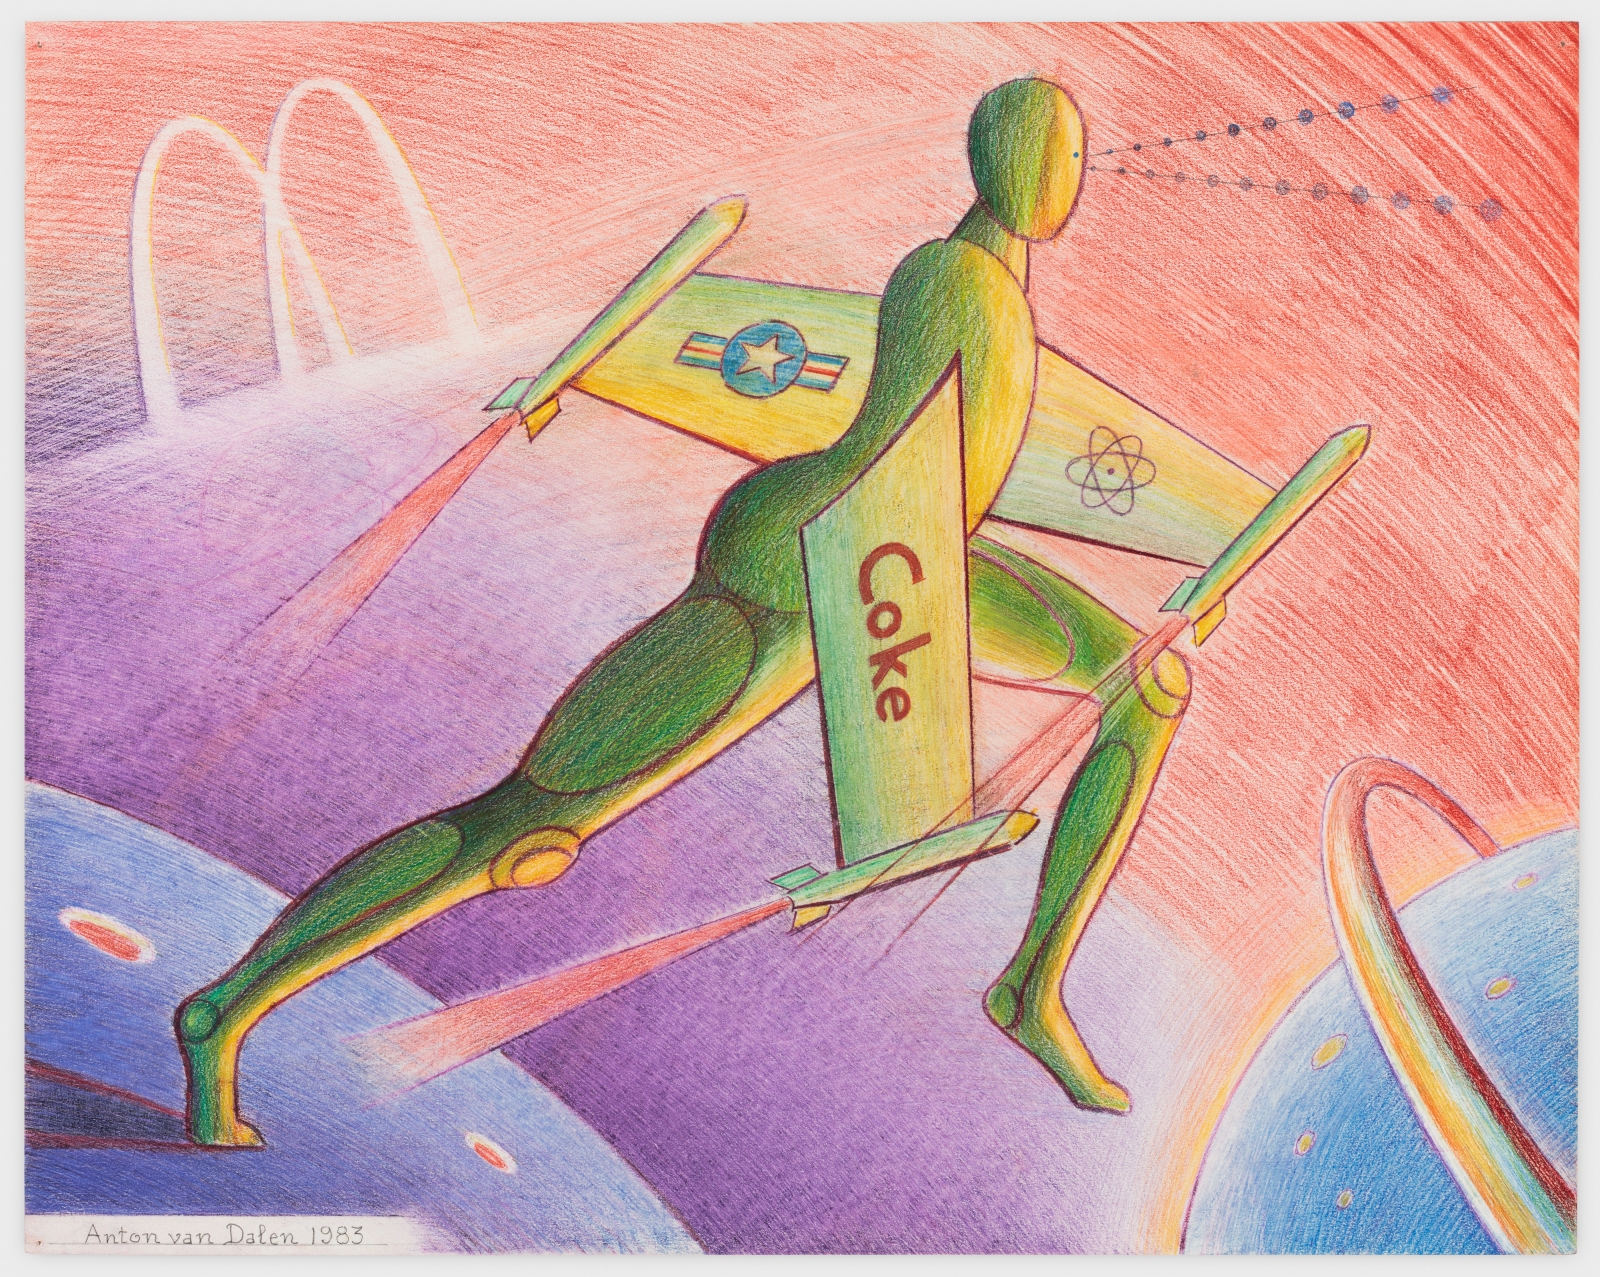 Anton van Dalen
Science Fiction #3, 1983
Colored pencil on paper
23 x 29 ins.
58.4 x 73.7 cm